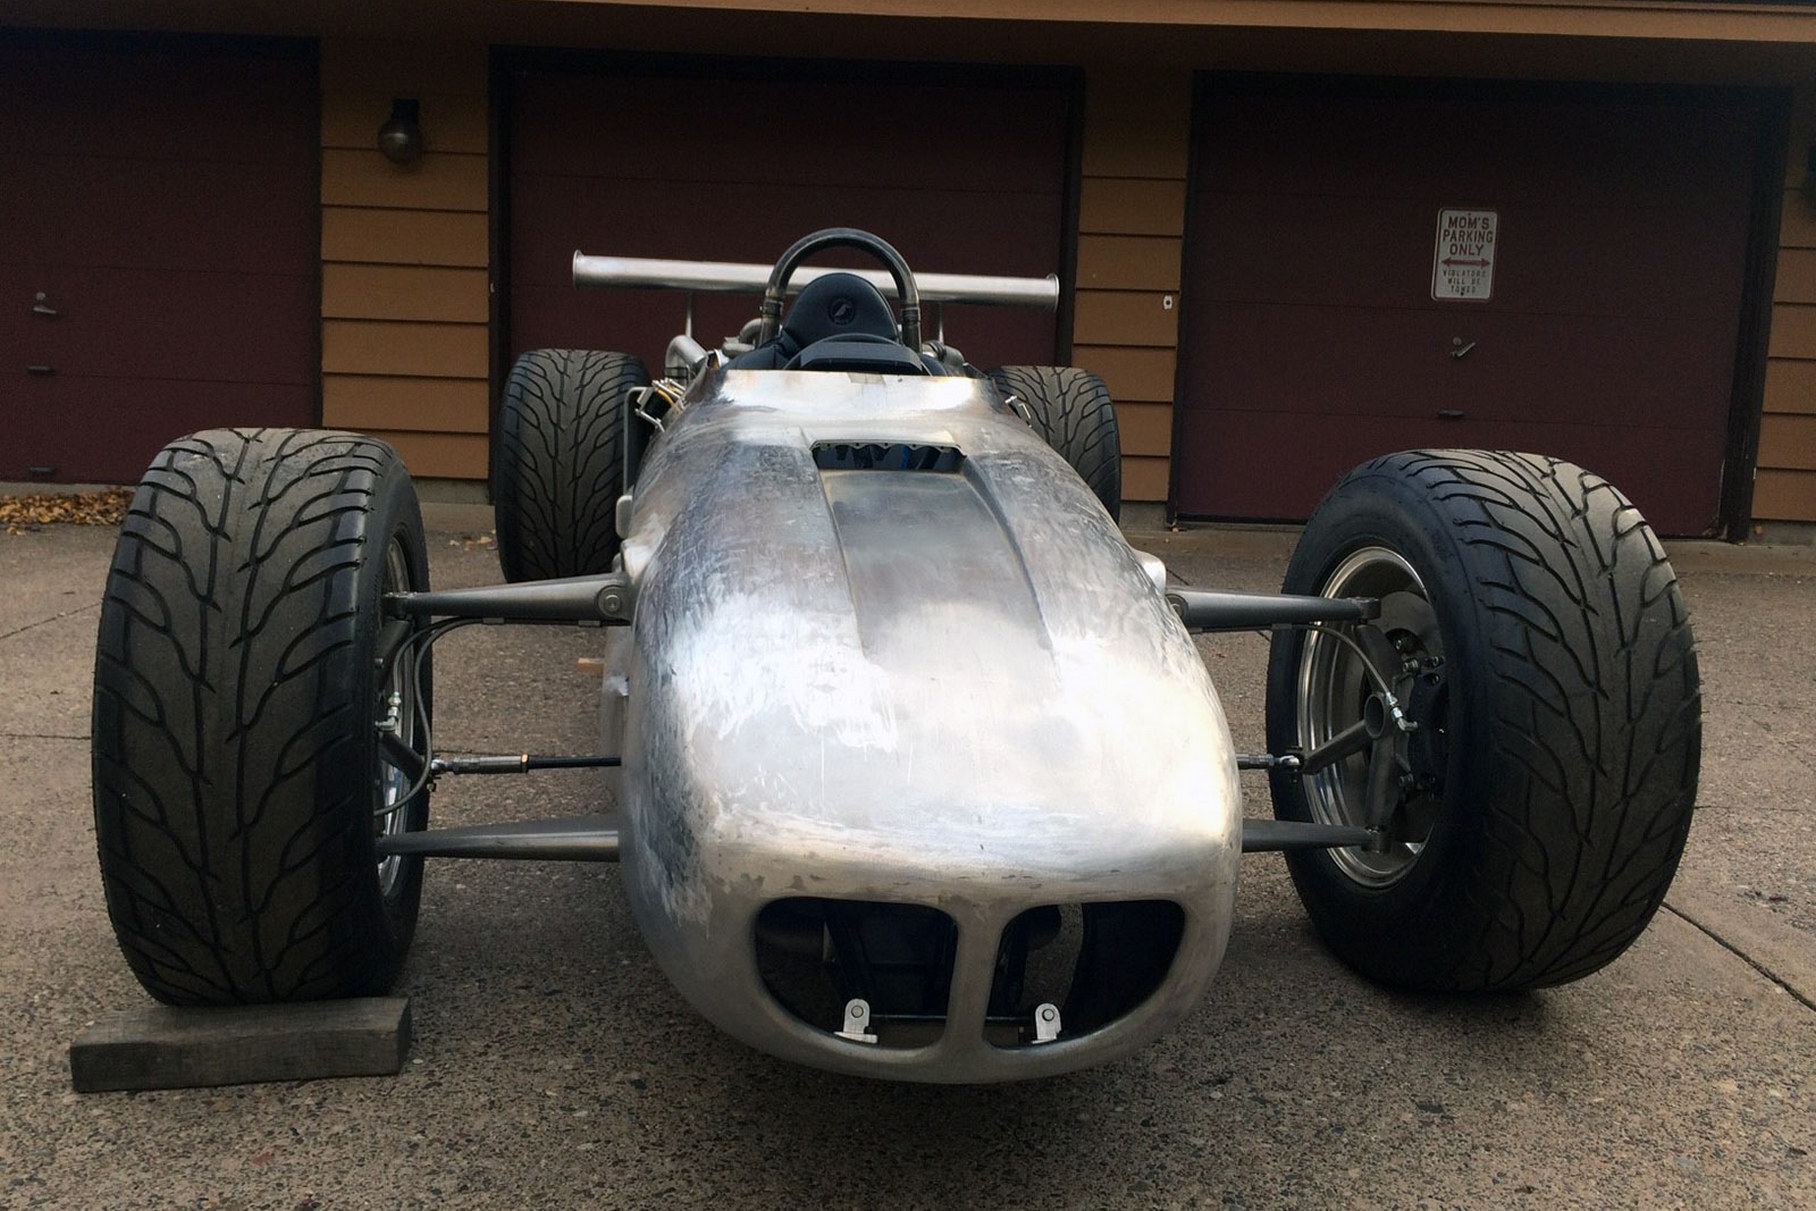 Вот такую «сигару» в духе старых болидов Indycar построил у себя в гараже американец Дон Грофф. И мотор V12 для неё тоже построил сам, из пары «шестёрок» Toyota